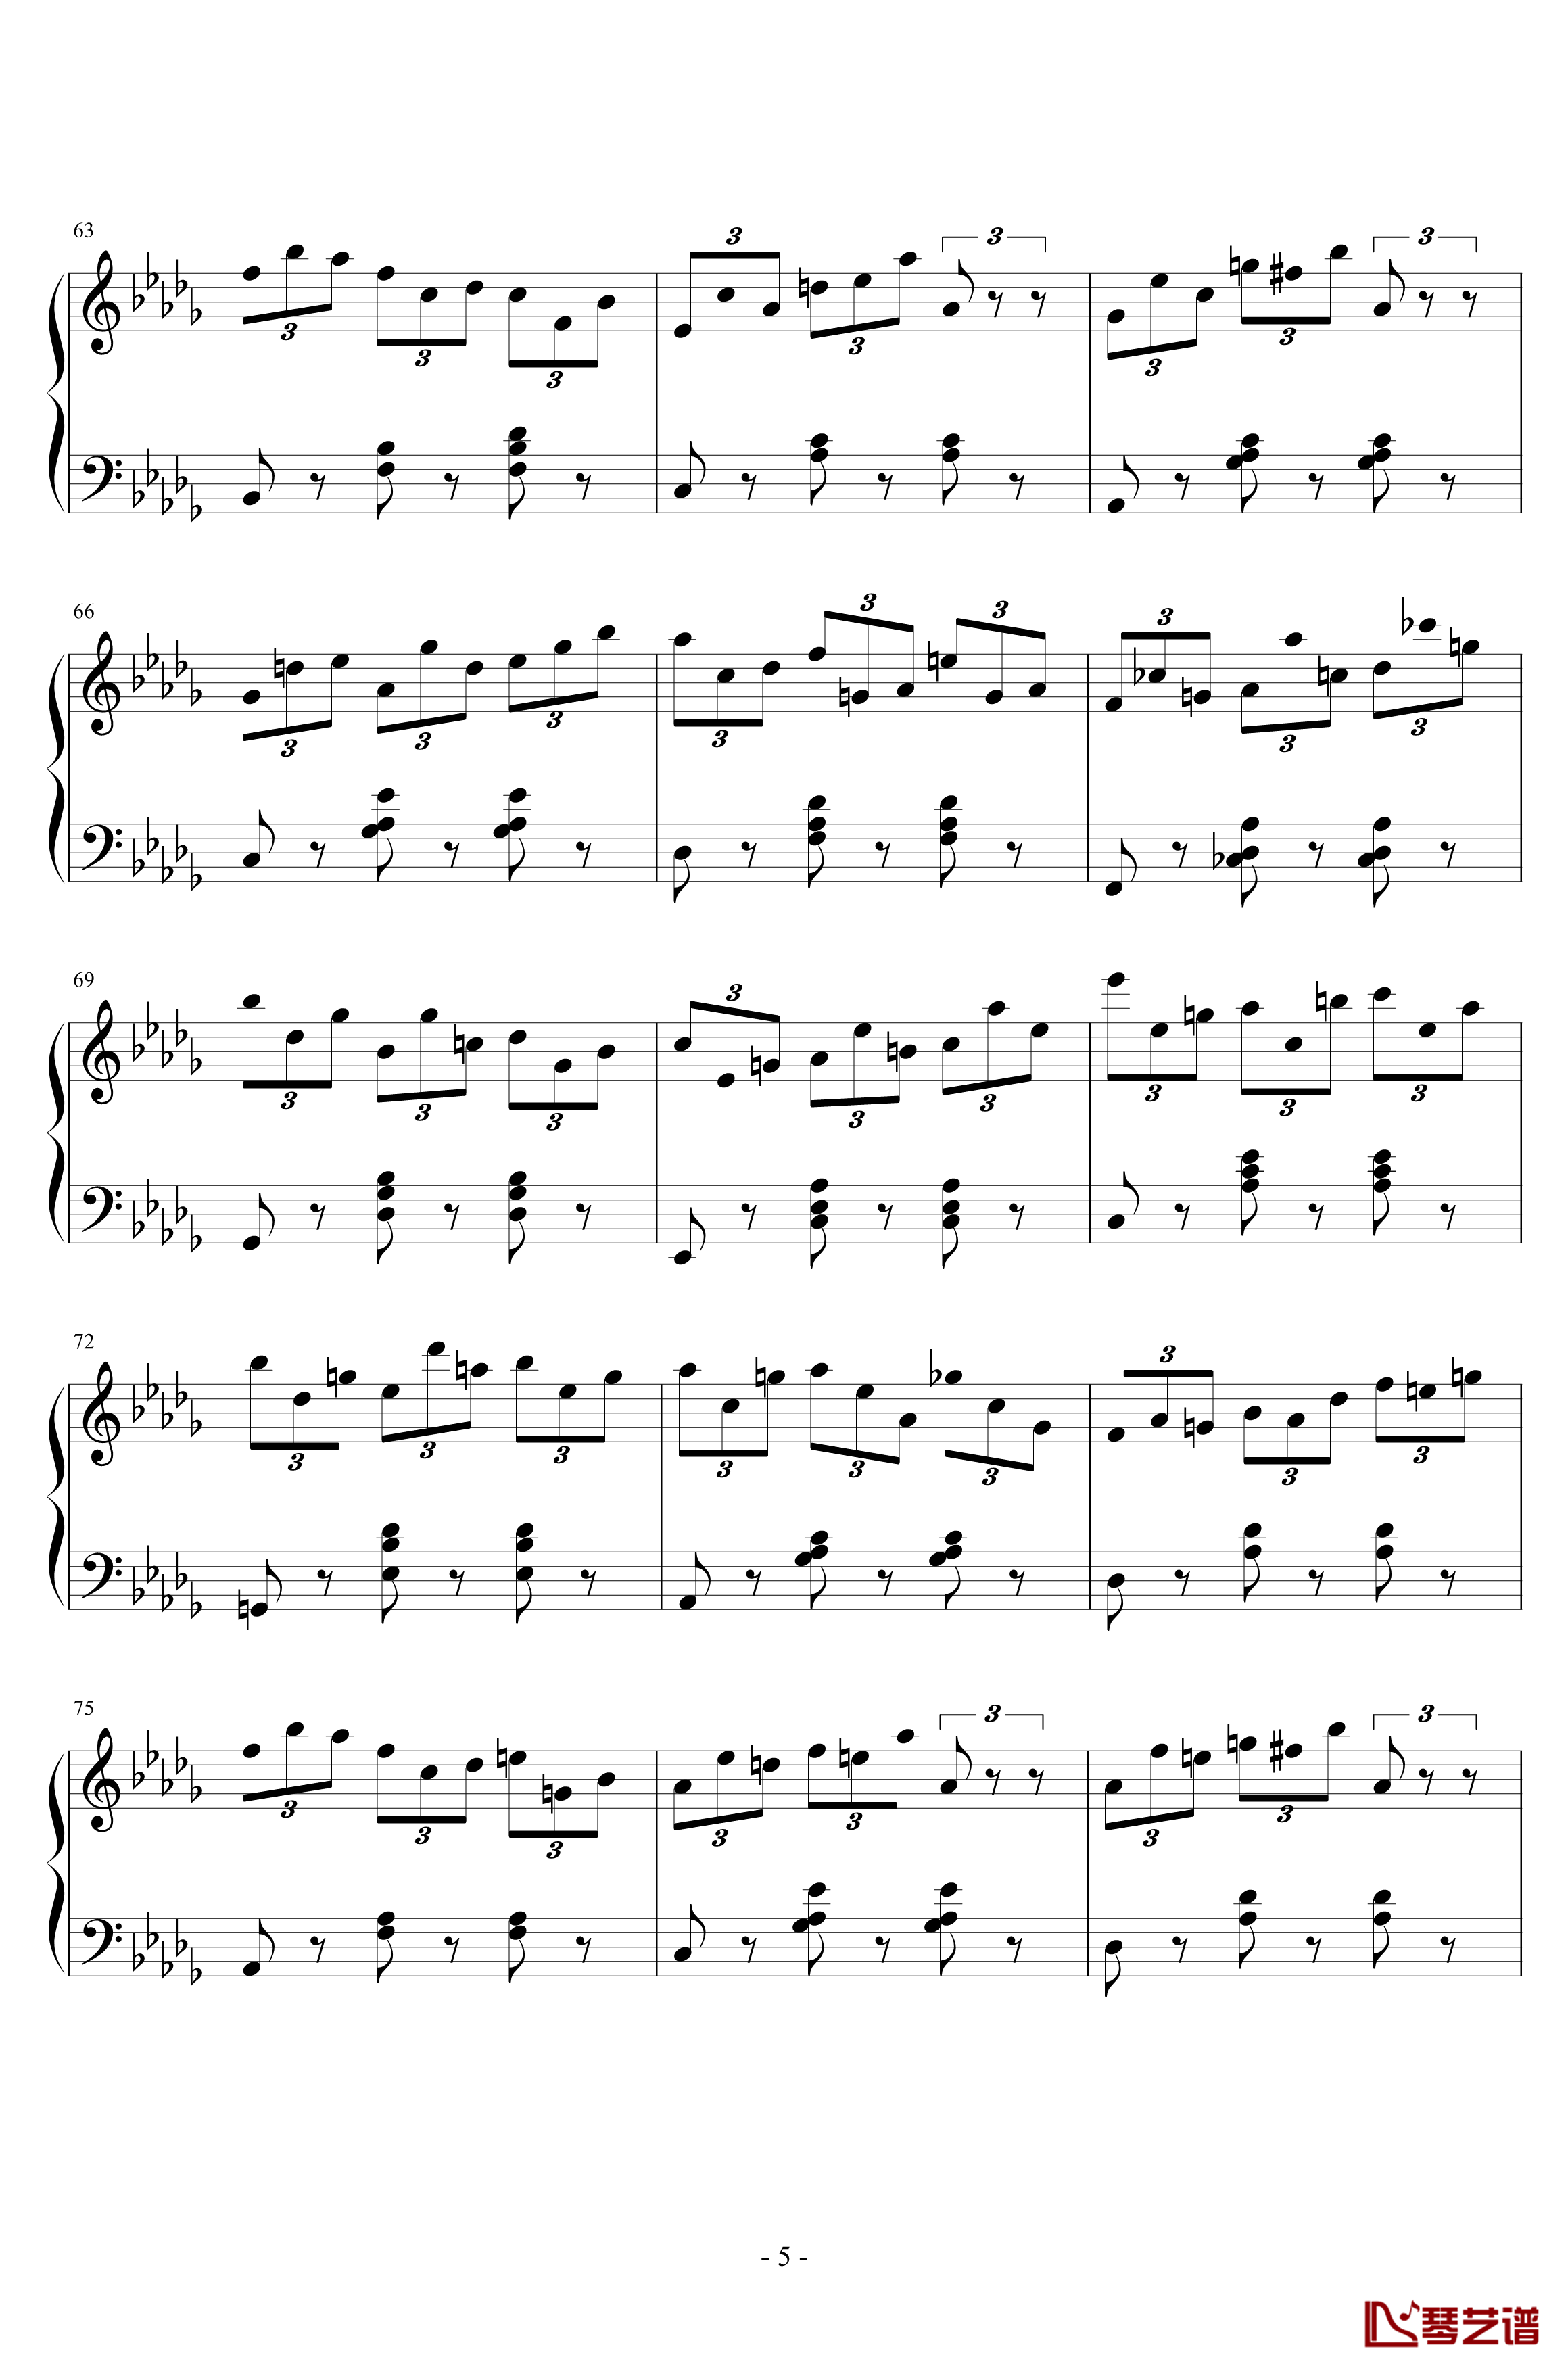 练习曲No.1 Op.6 降D大调练习曲钢琴谱-江畔新绿